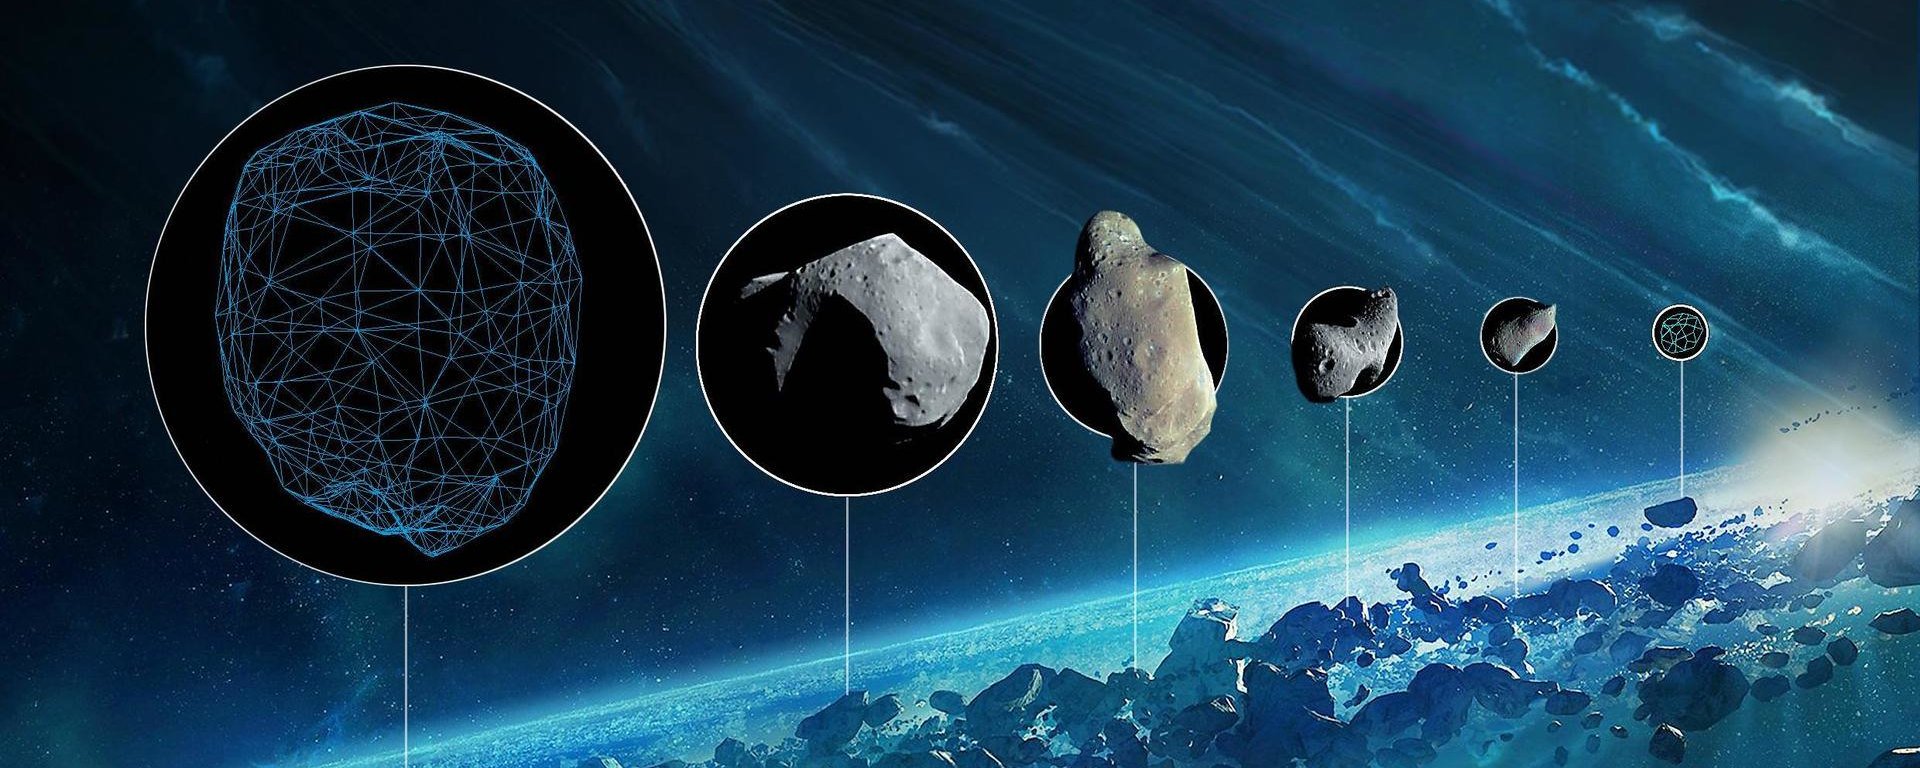 L'expérience avec l'arme à feu a prouvé que les astéroïdes pourraient apporter de l'eau sur la Terre